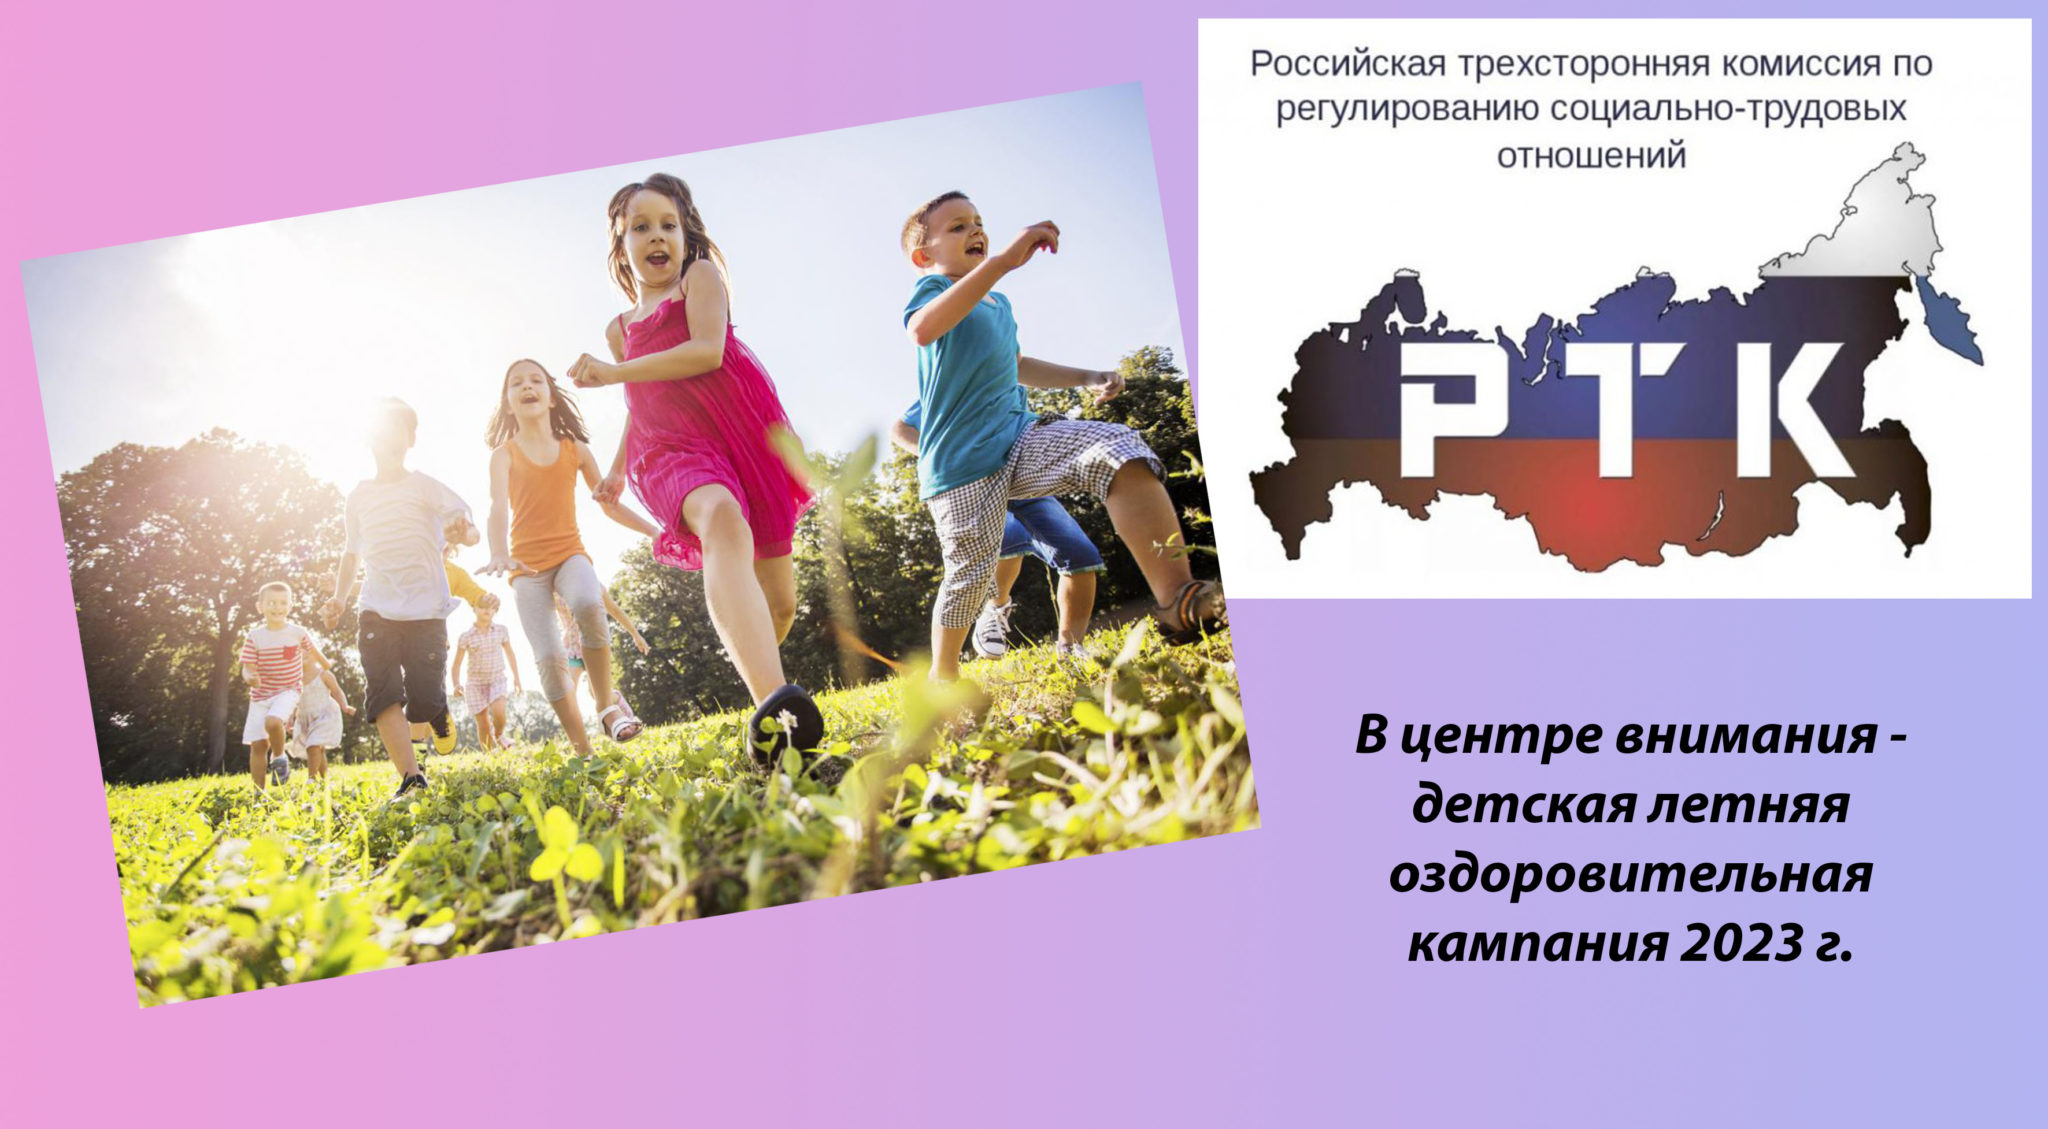 В Российской трехсторонней комиссии обсудили вопросы летнего оздоровления детей